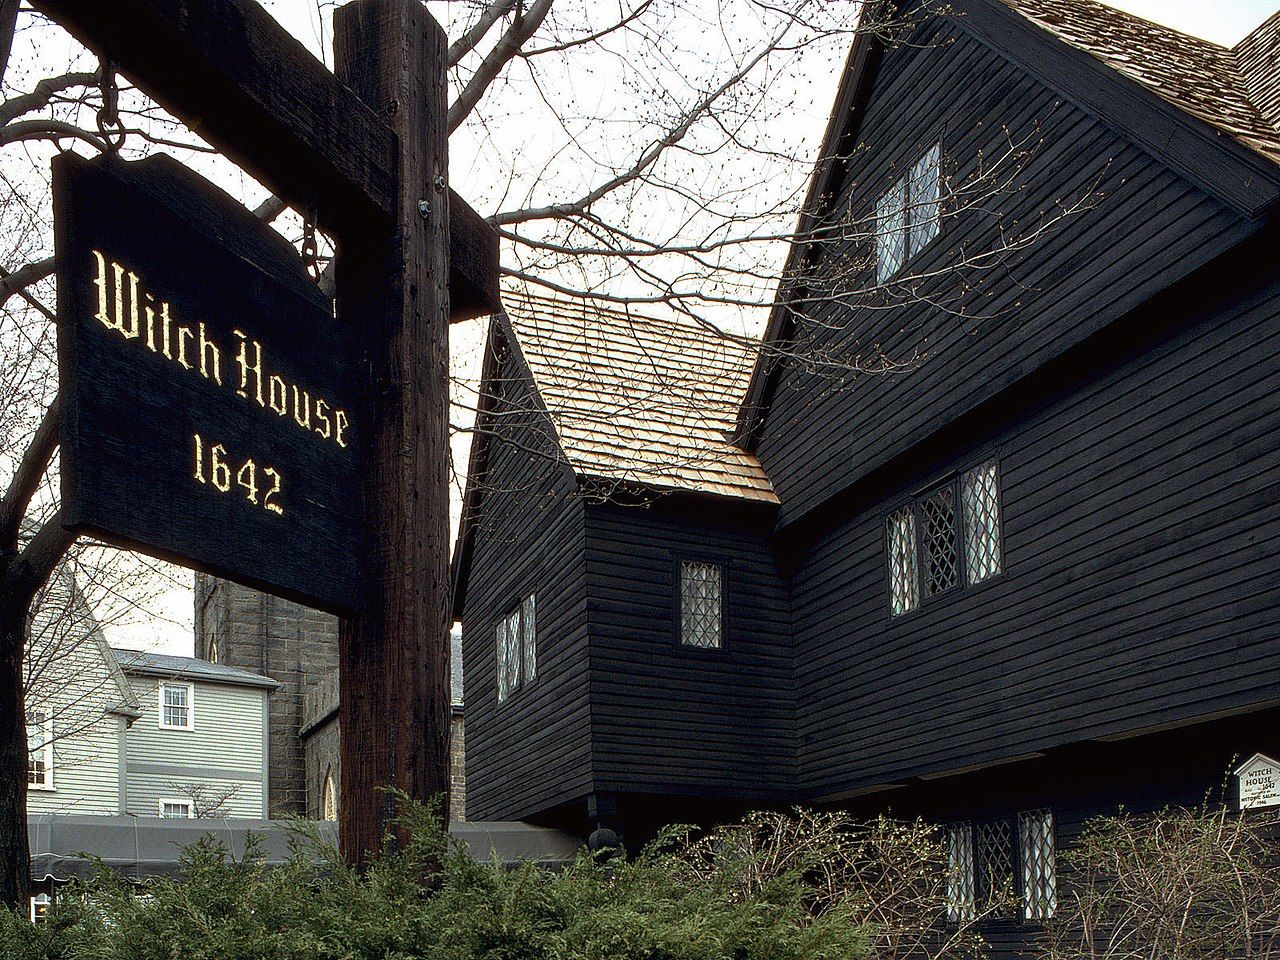 The Salem Witch house of Salem Massachusetts